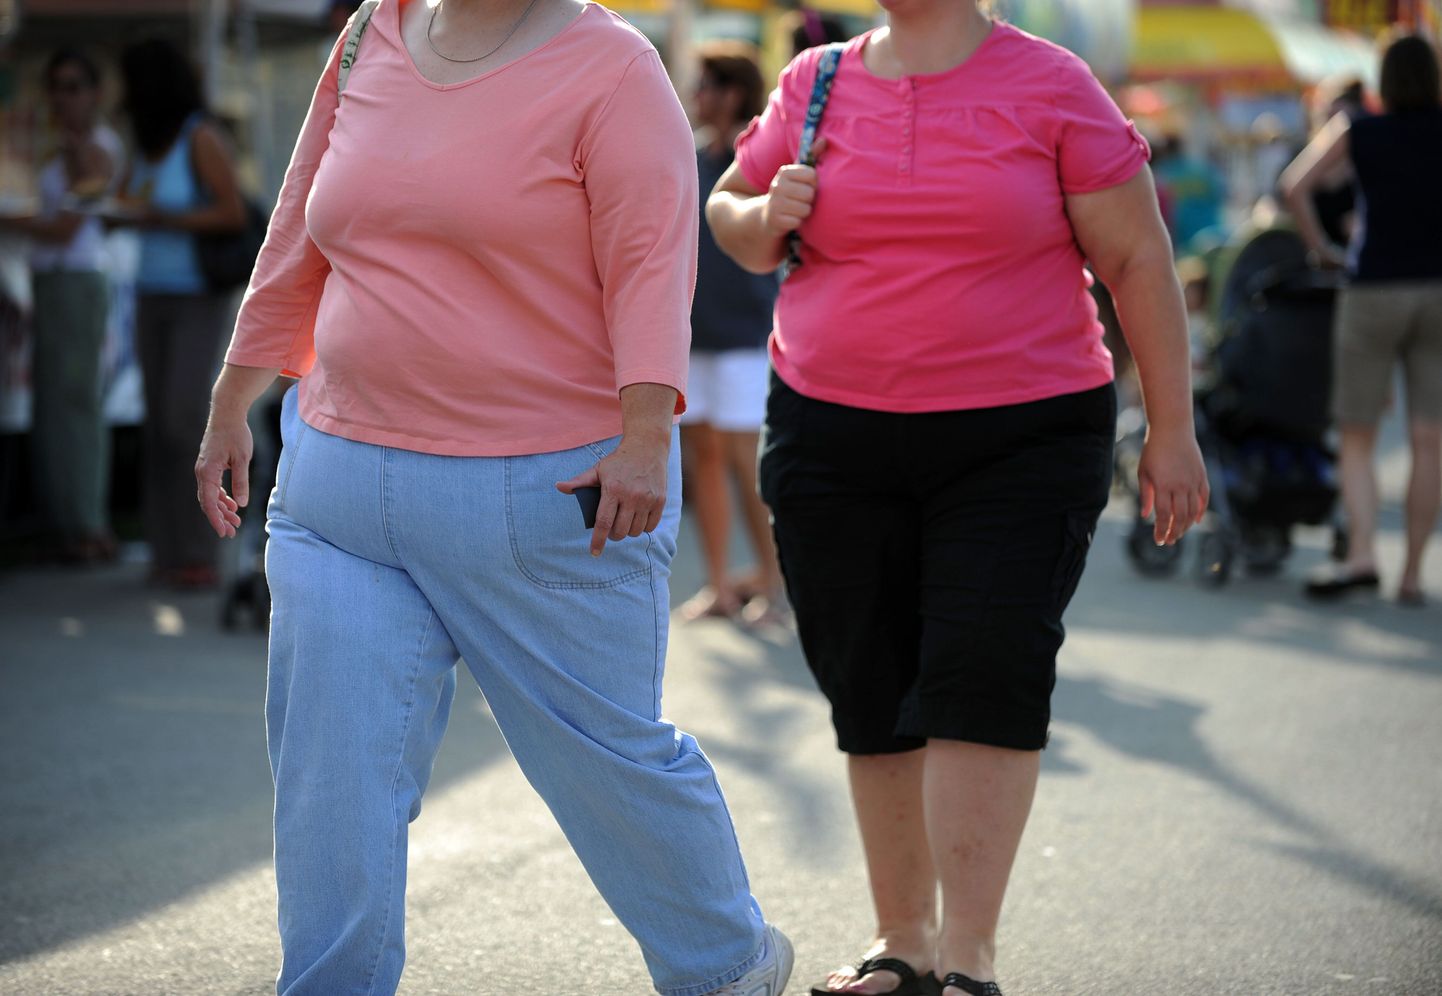 Kui sinu kodukandis on võimalused näiteks tervisekõnniks või välise jõusaali kasutamiseks, on risk üleliigseid kilosid koguda väiksem.